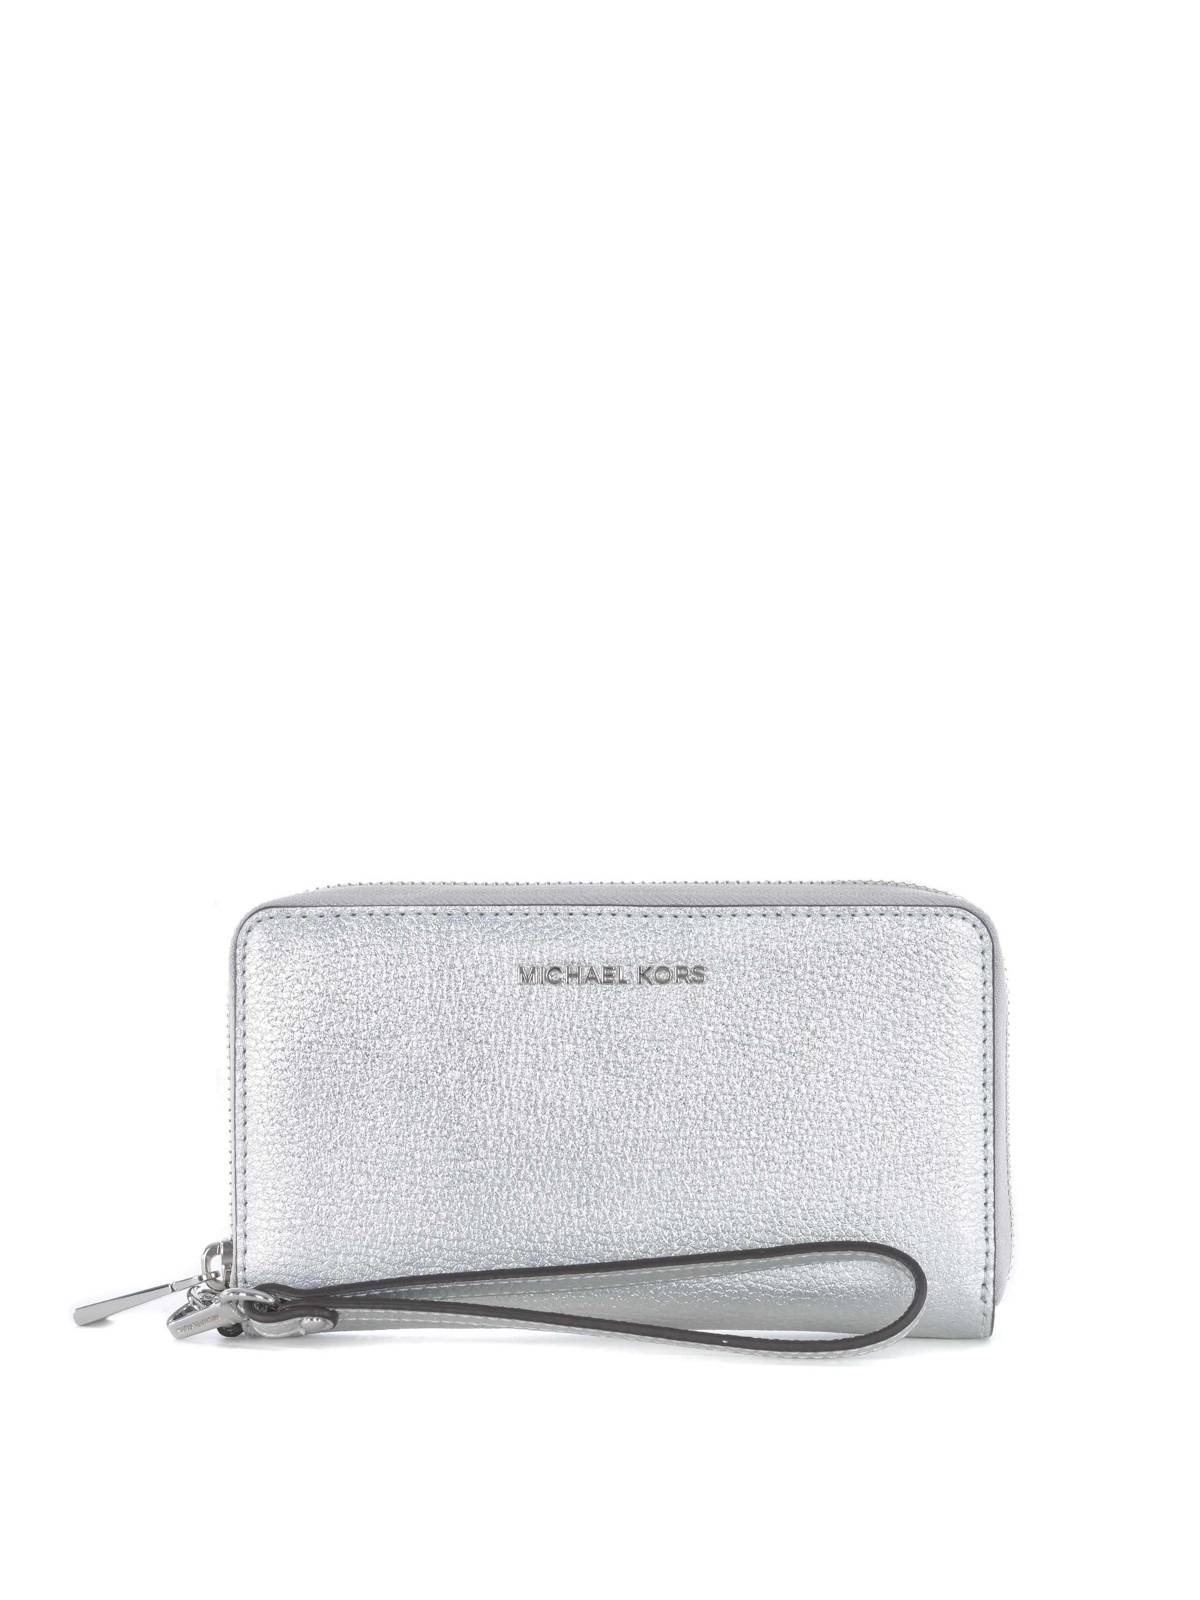 Wallets & purses Michael Kors - Jet Set large leather smartphone wallet -  34H9MM9E3M040